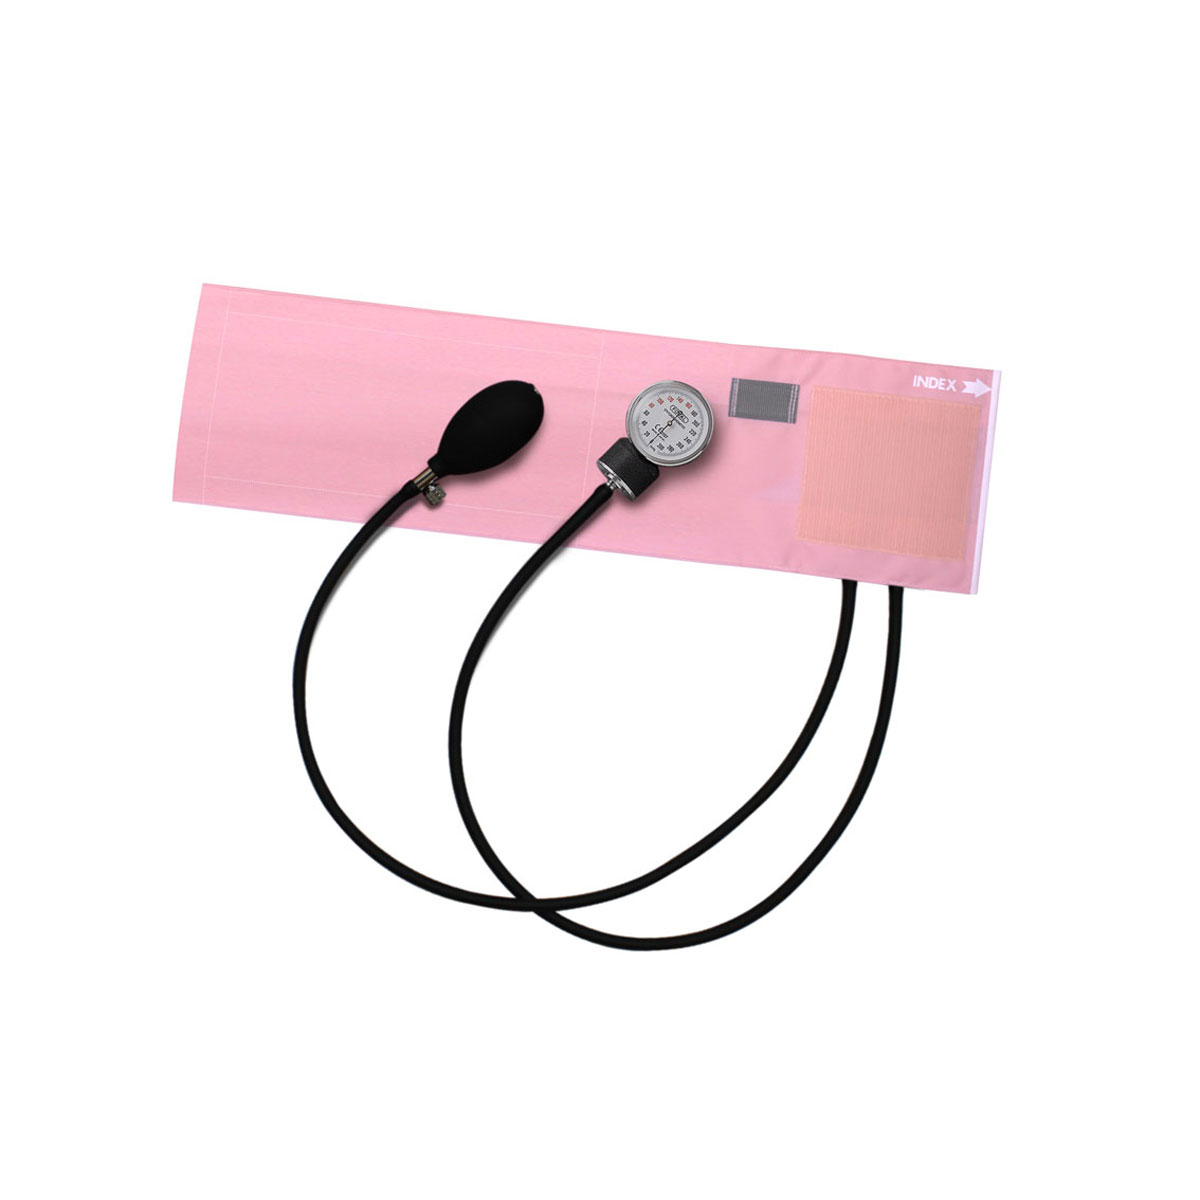 [販売終了] FOCAL アネロイド血圧計 FC-100V イージーリリースバルブ付 ナイロンカフ ピンク